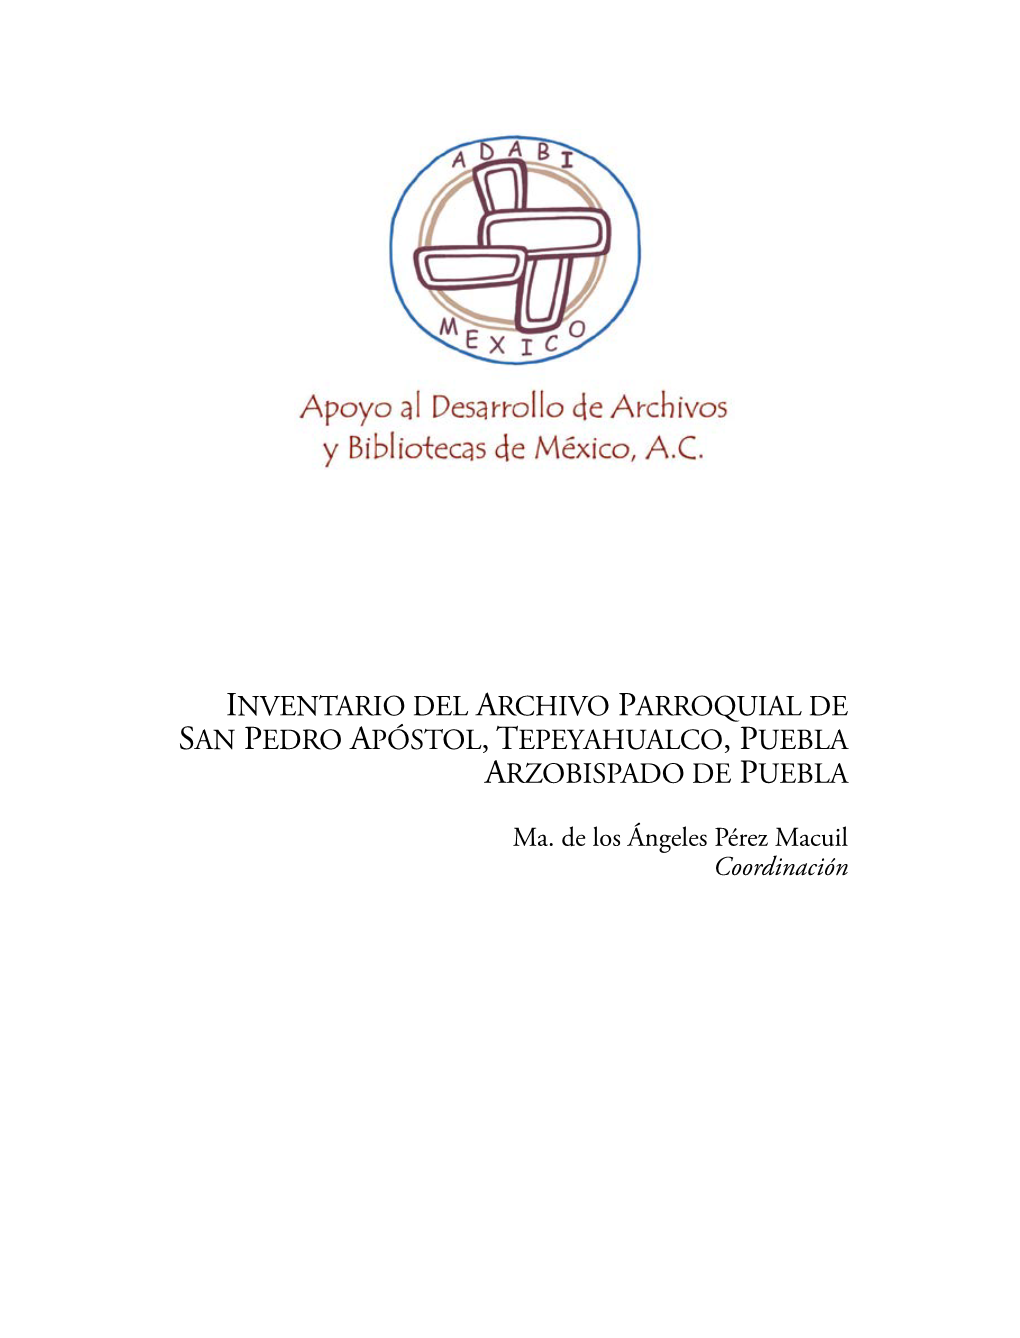 Inventario Del Archivo Parroquial De San Pedro Apóstol, Tepeyahualco, Puebla Arzobispado De Puebla